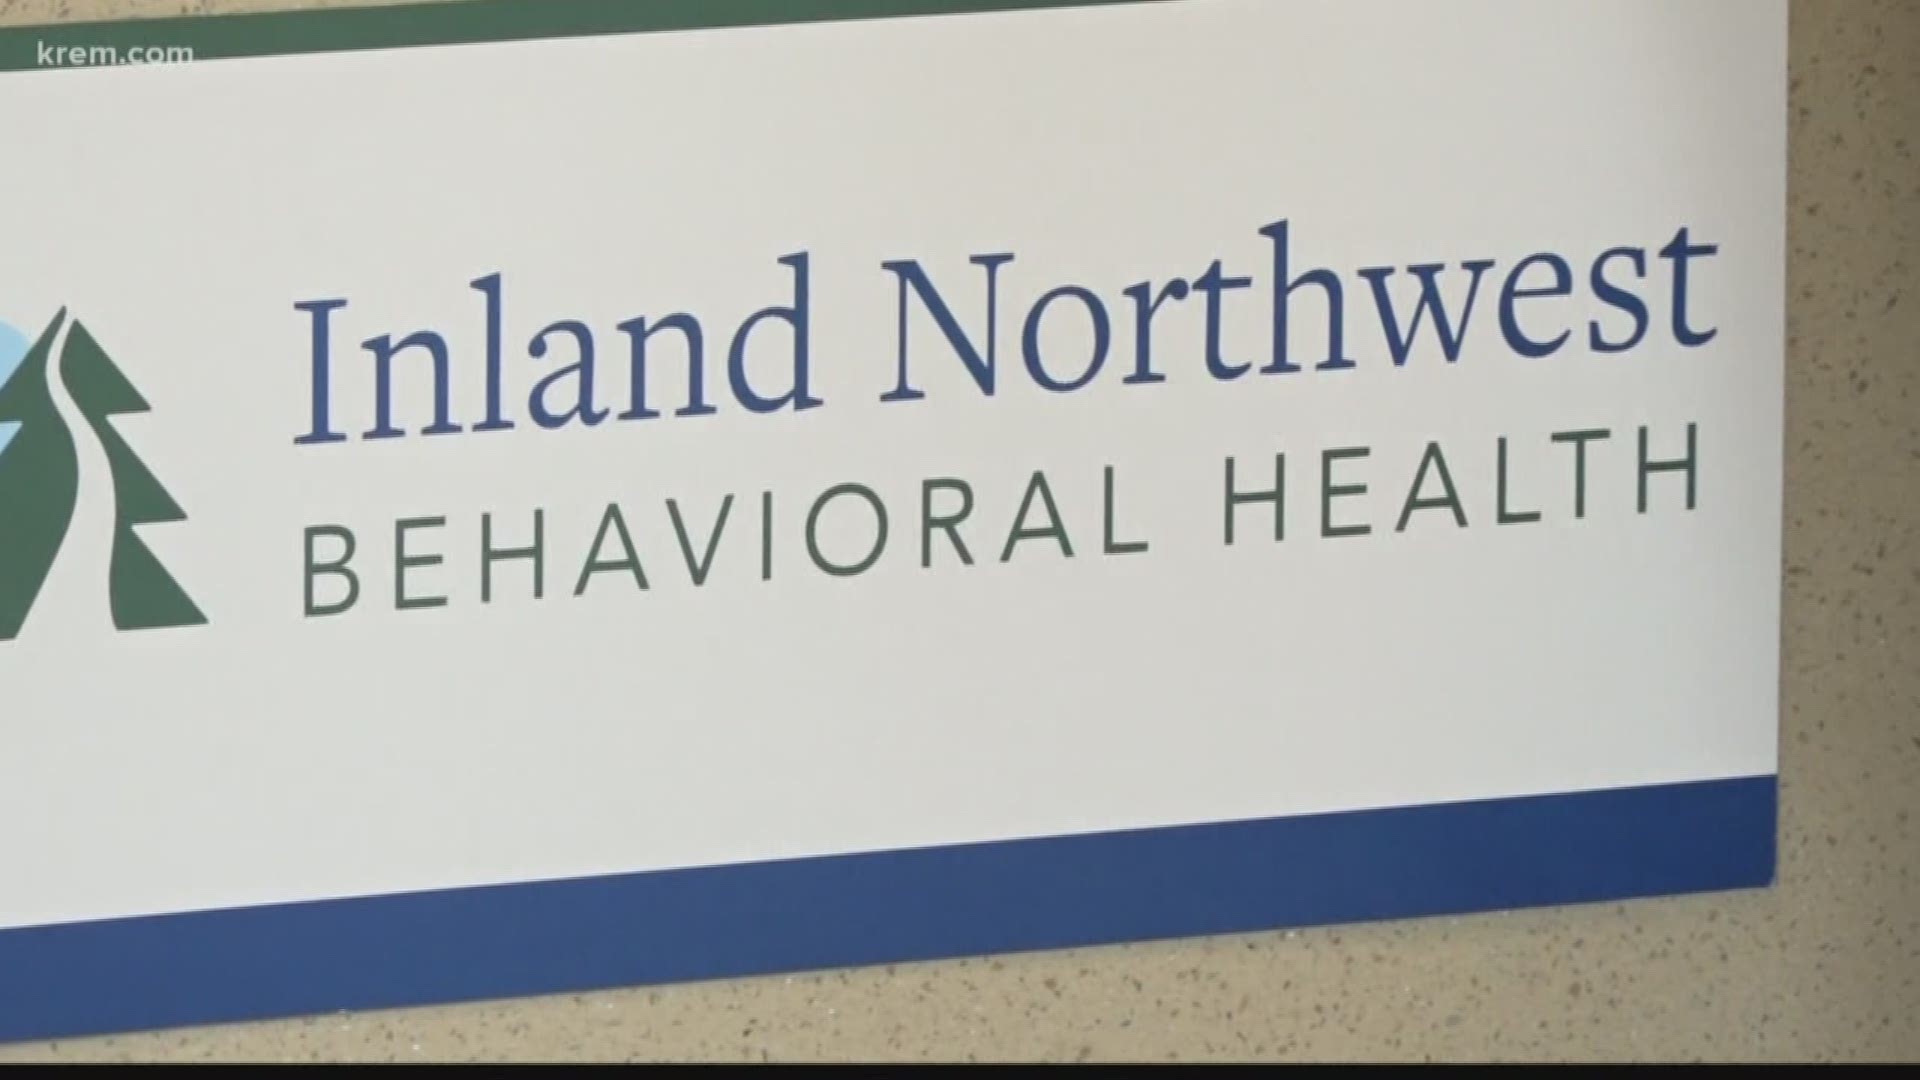 Spokane behavioral health center opens in October